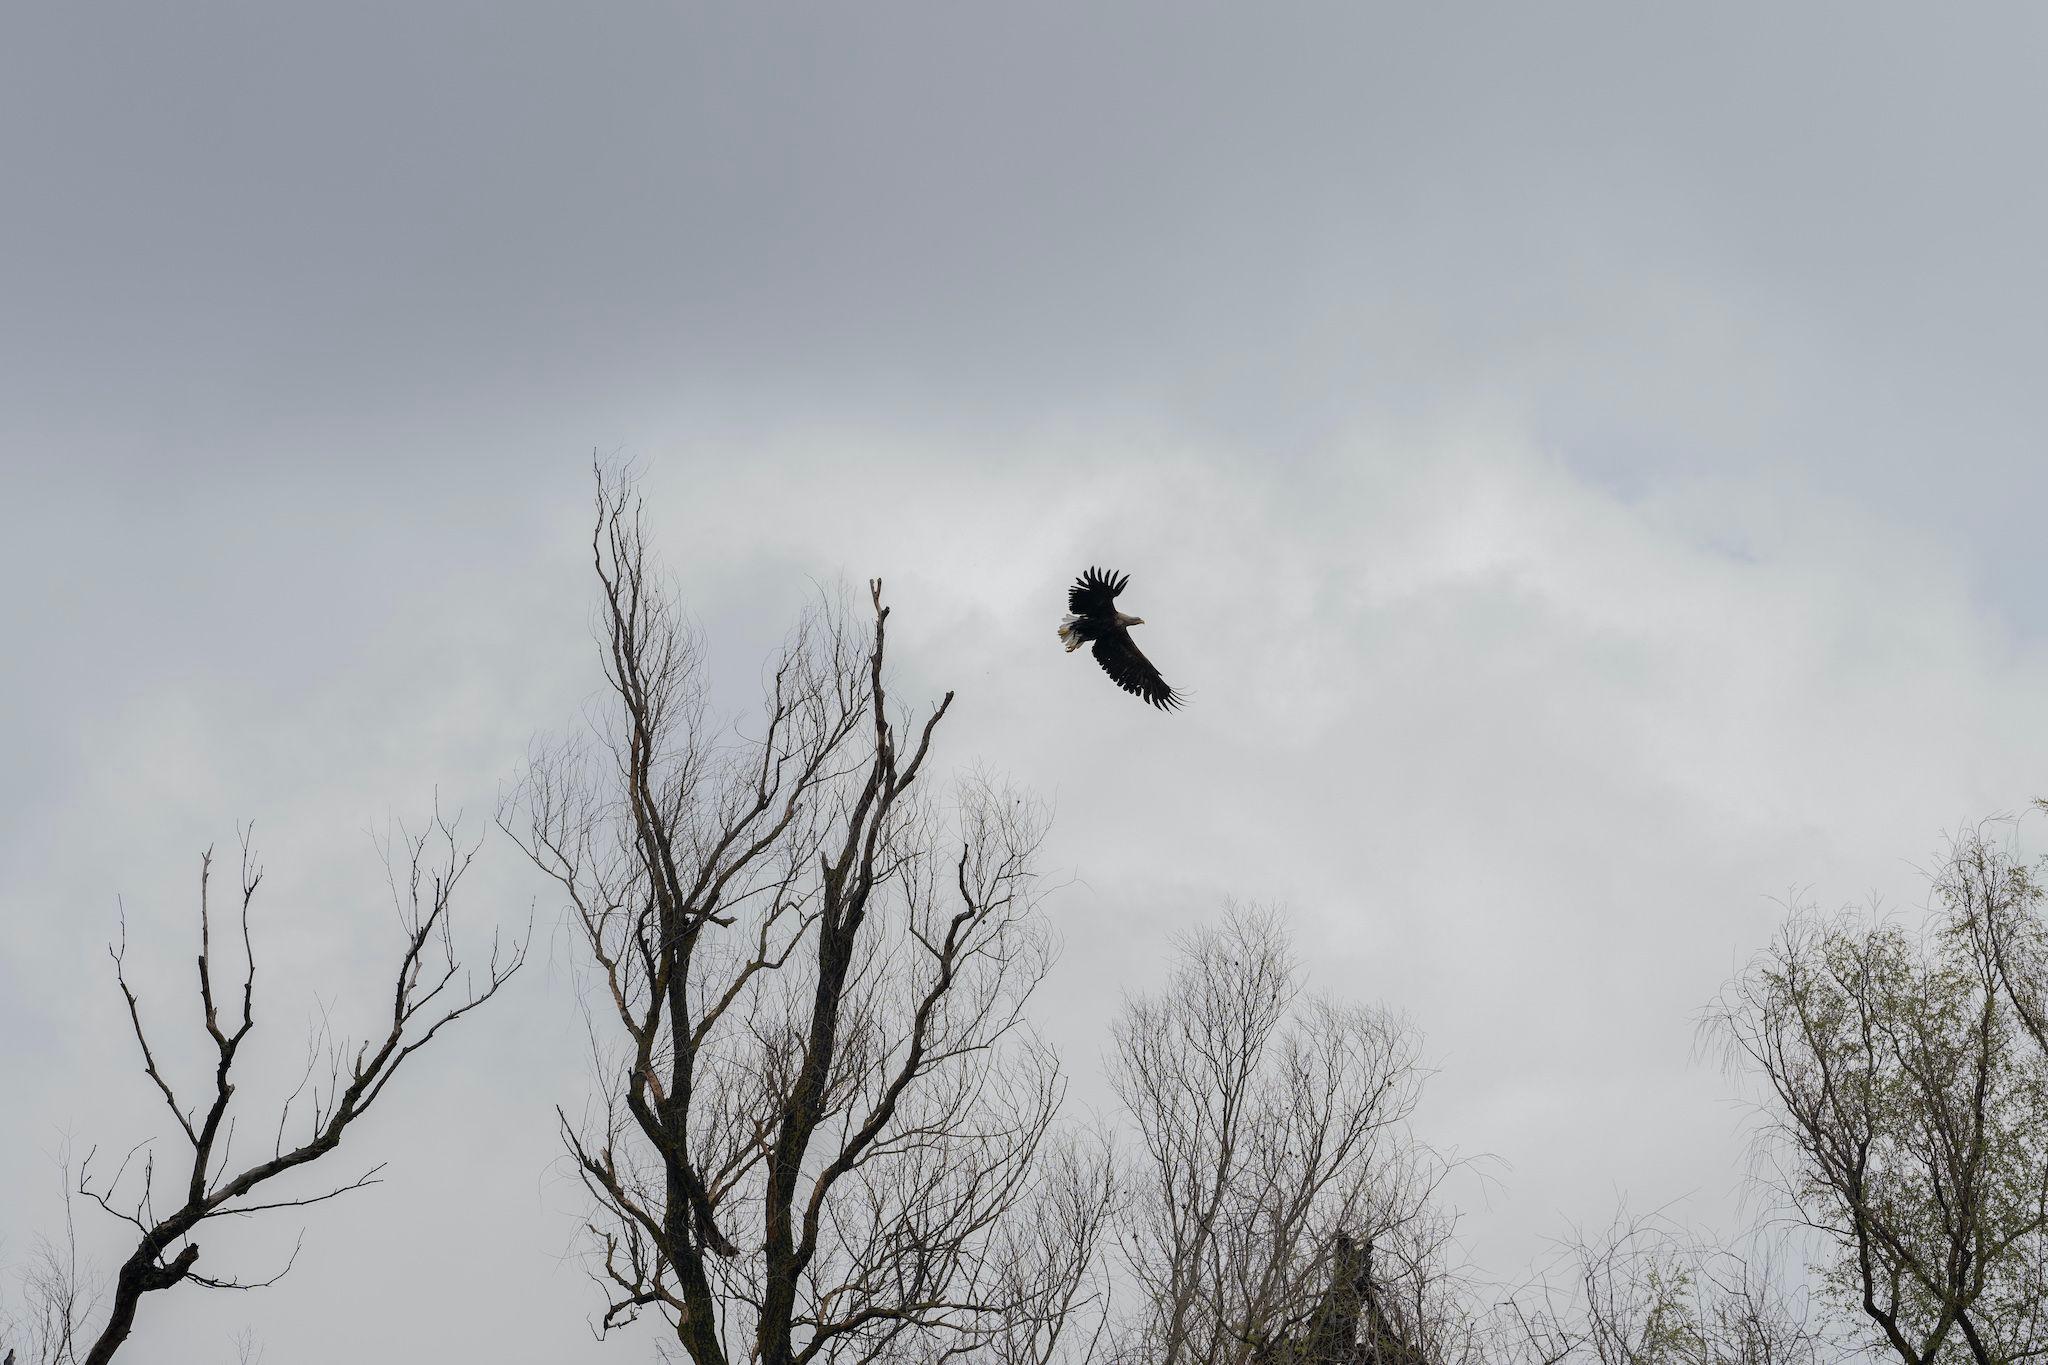 Vulturul codalb rămâne în Deltă pe tot parcursul anului, astfel încât riscă să-i fie afectate cuiburile de incendiile de vegetație. Foto: Andreea Câmpeanu